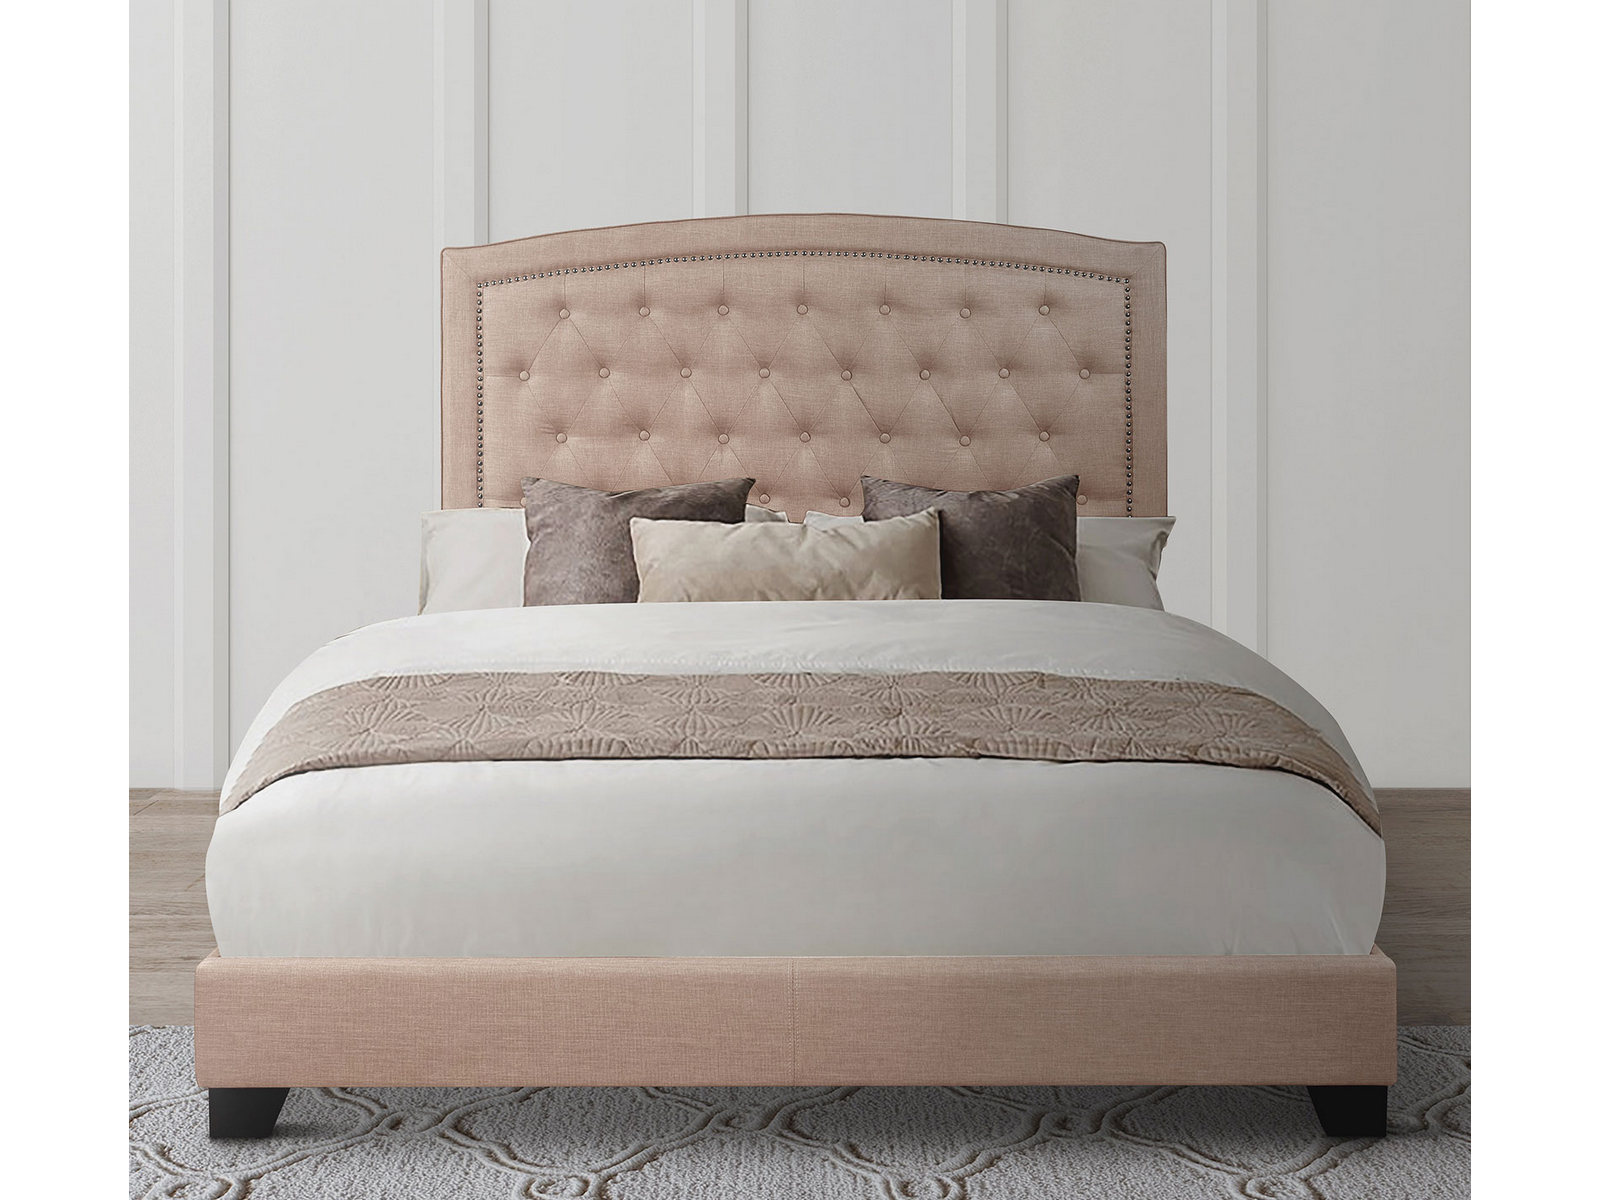 Homelegance Upholstered Bed Set | Full | Linden Bed Frame & Headboard | Beige